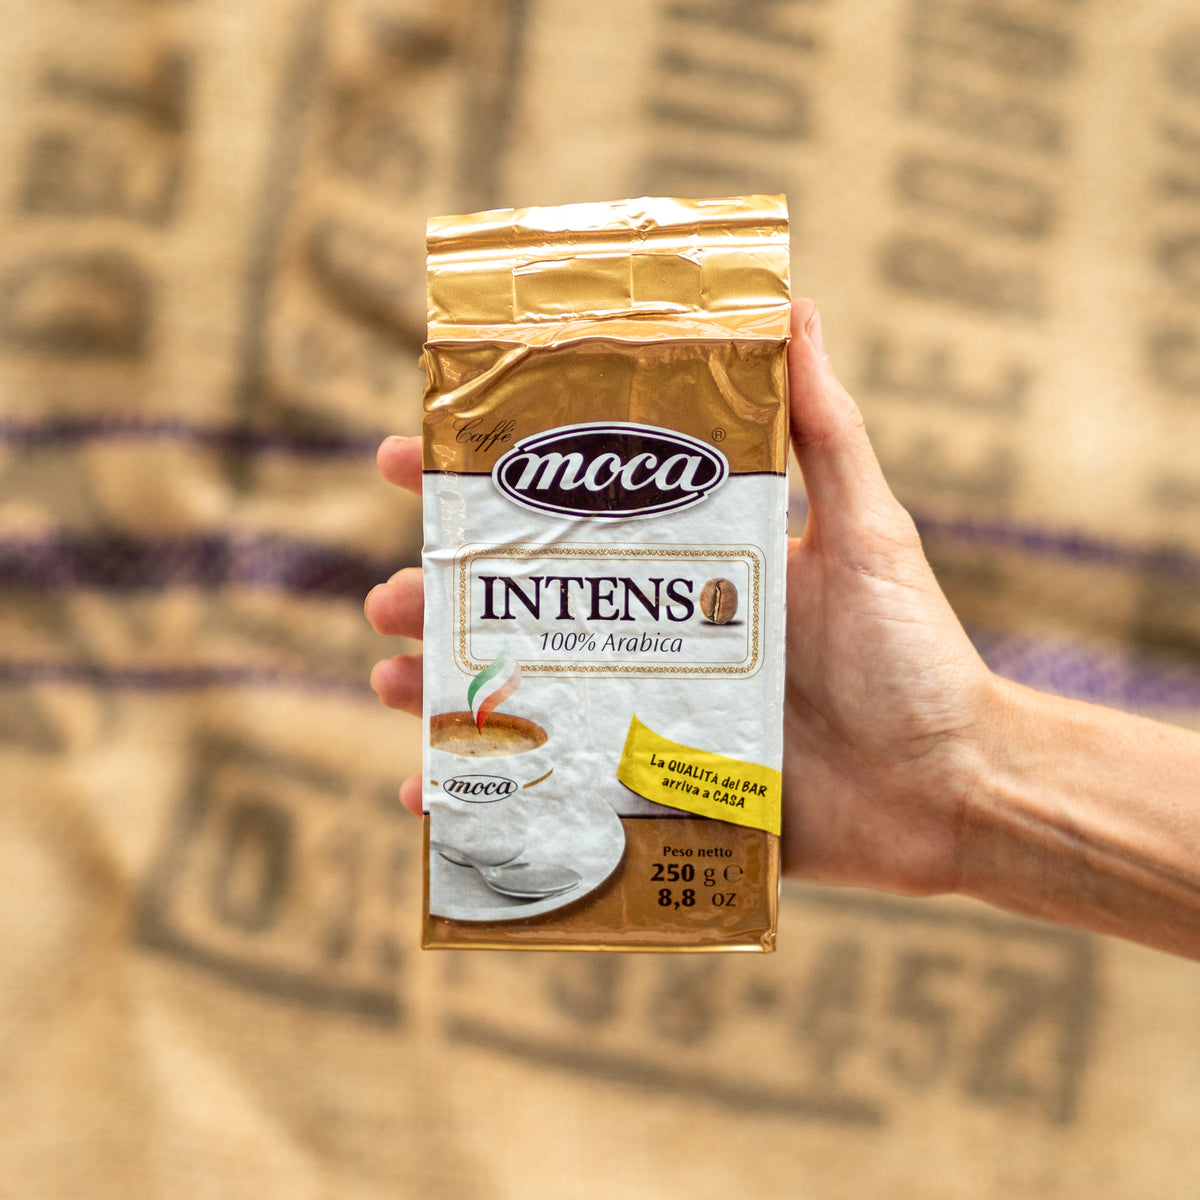 摩卡摩卡咖啡粉 1 公斤 - 浓烈 - 4 个真空包装和 250 克保鲜袋